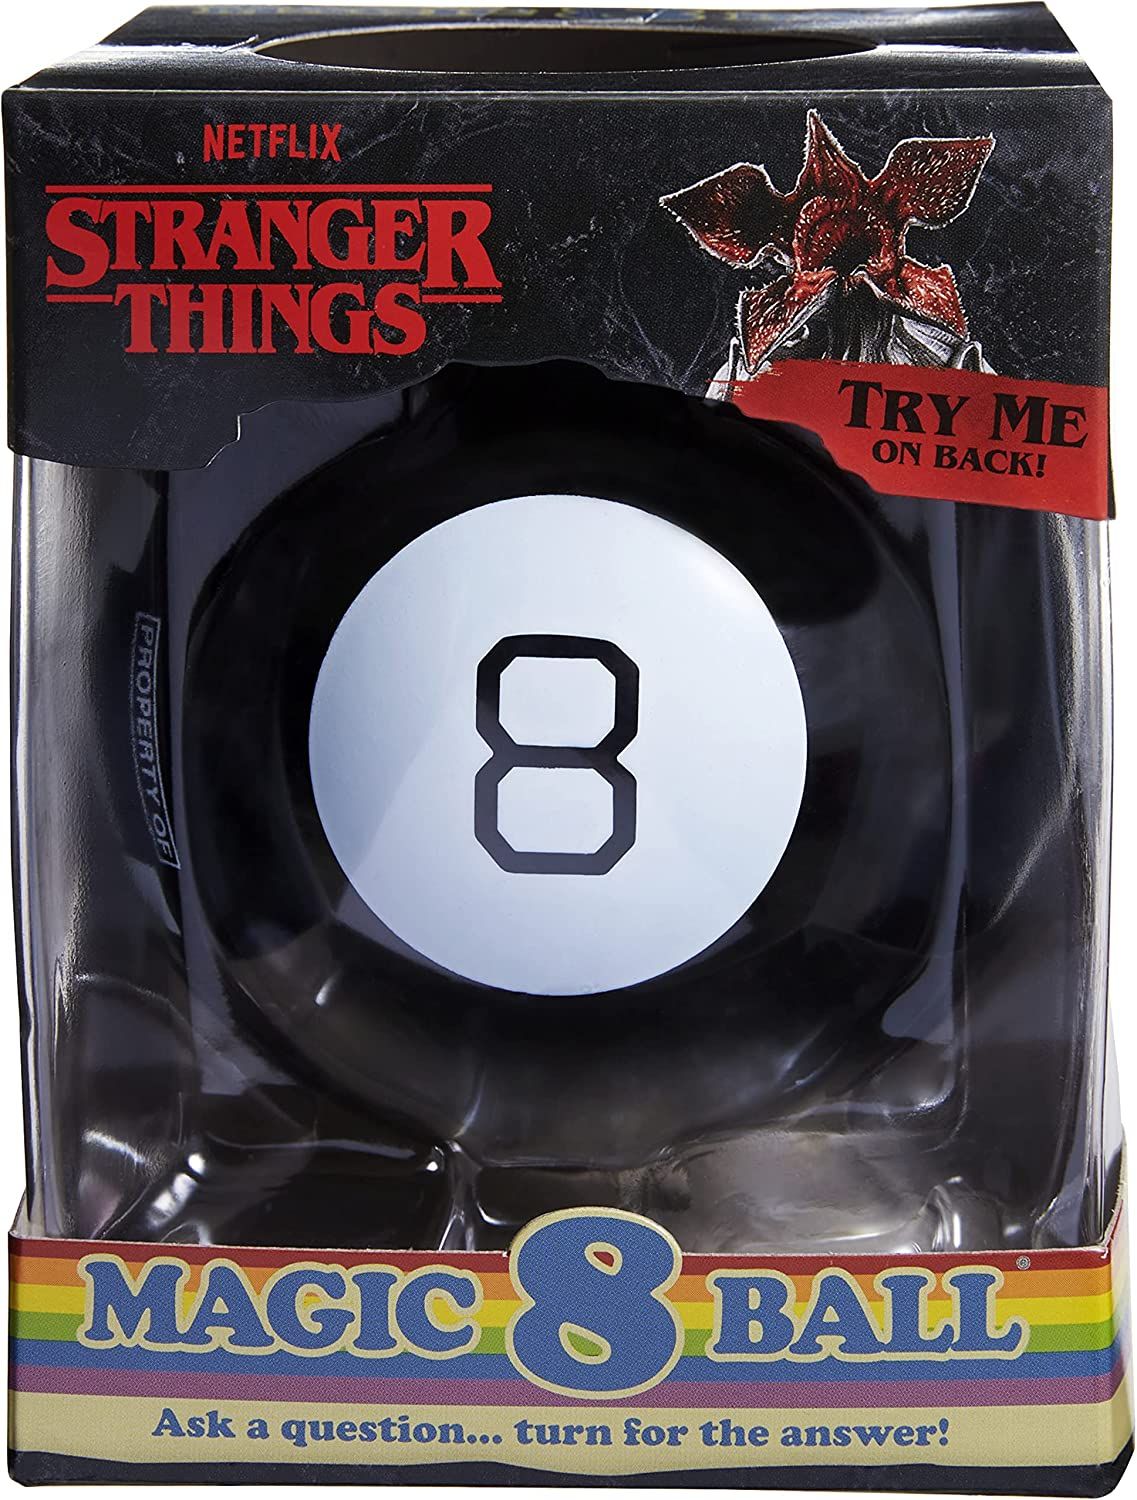 Magic 8 Ball best stranger things toys